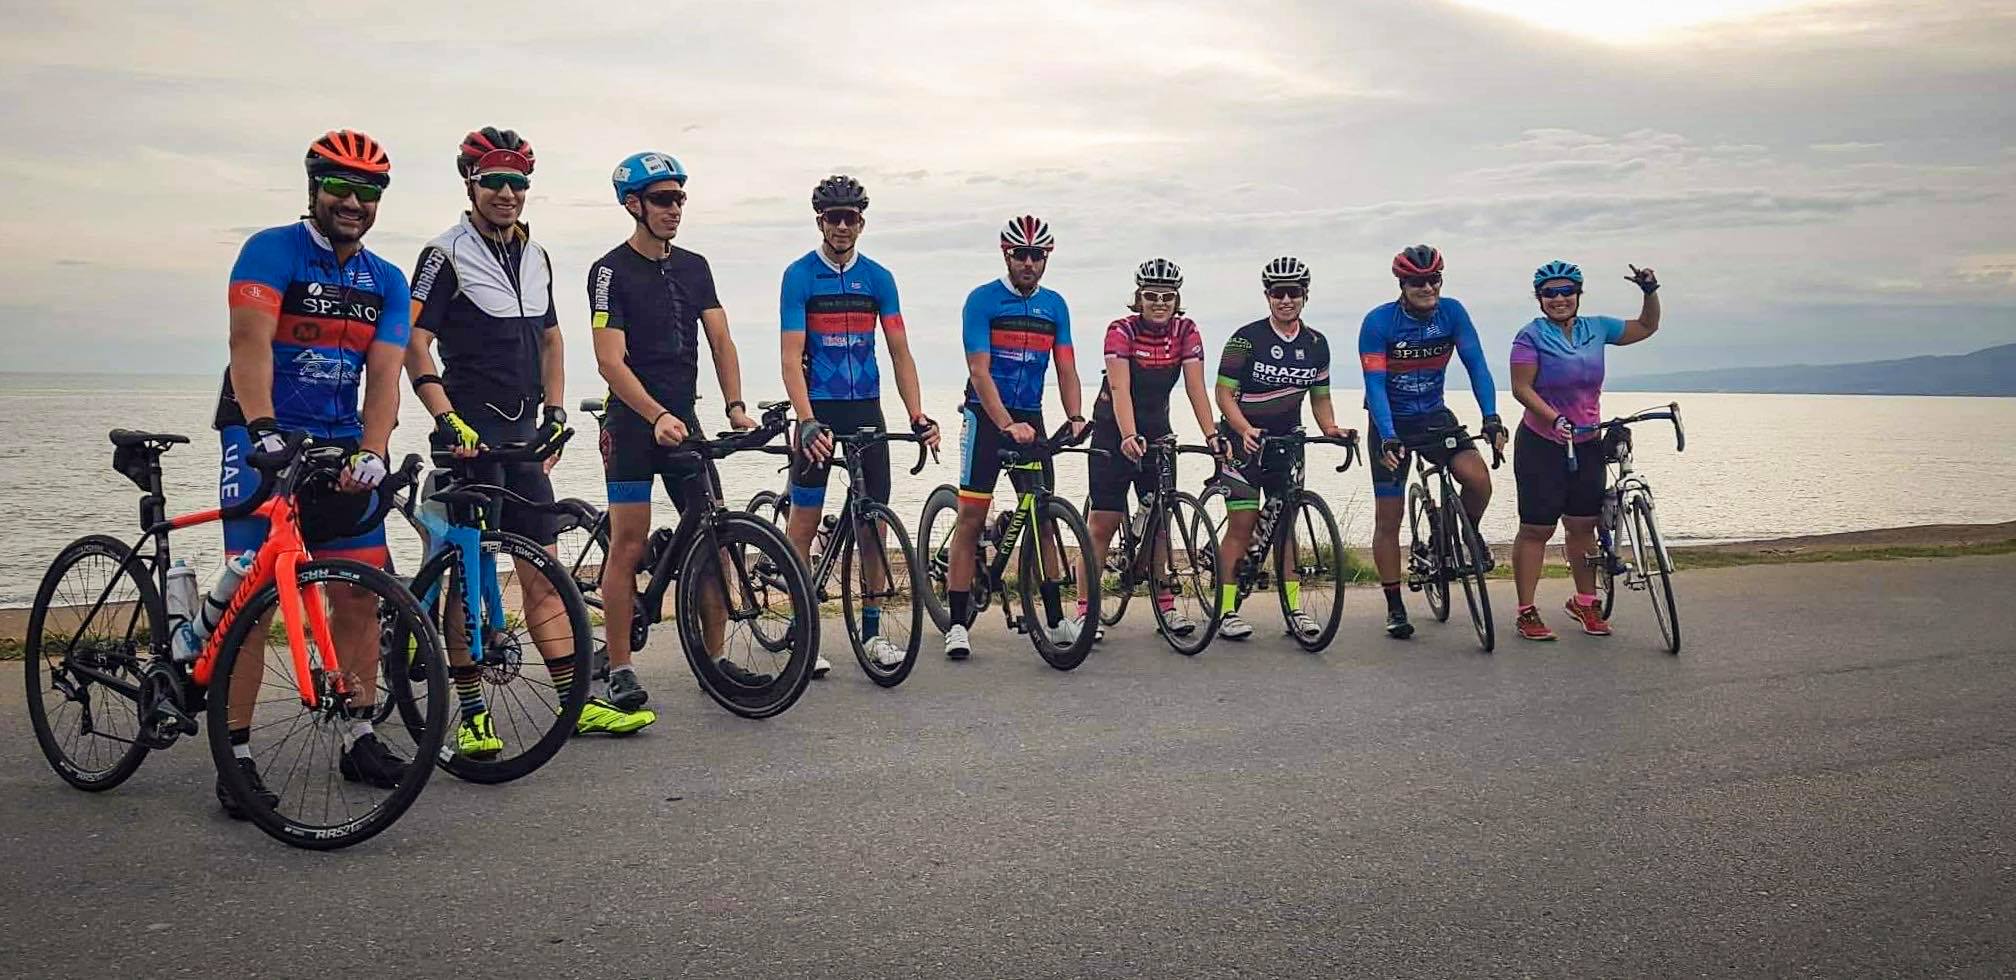 Ευκλής Καλαμάτας: Απολογισμός ποδηλατικού τμήματος για το 2020